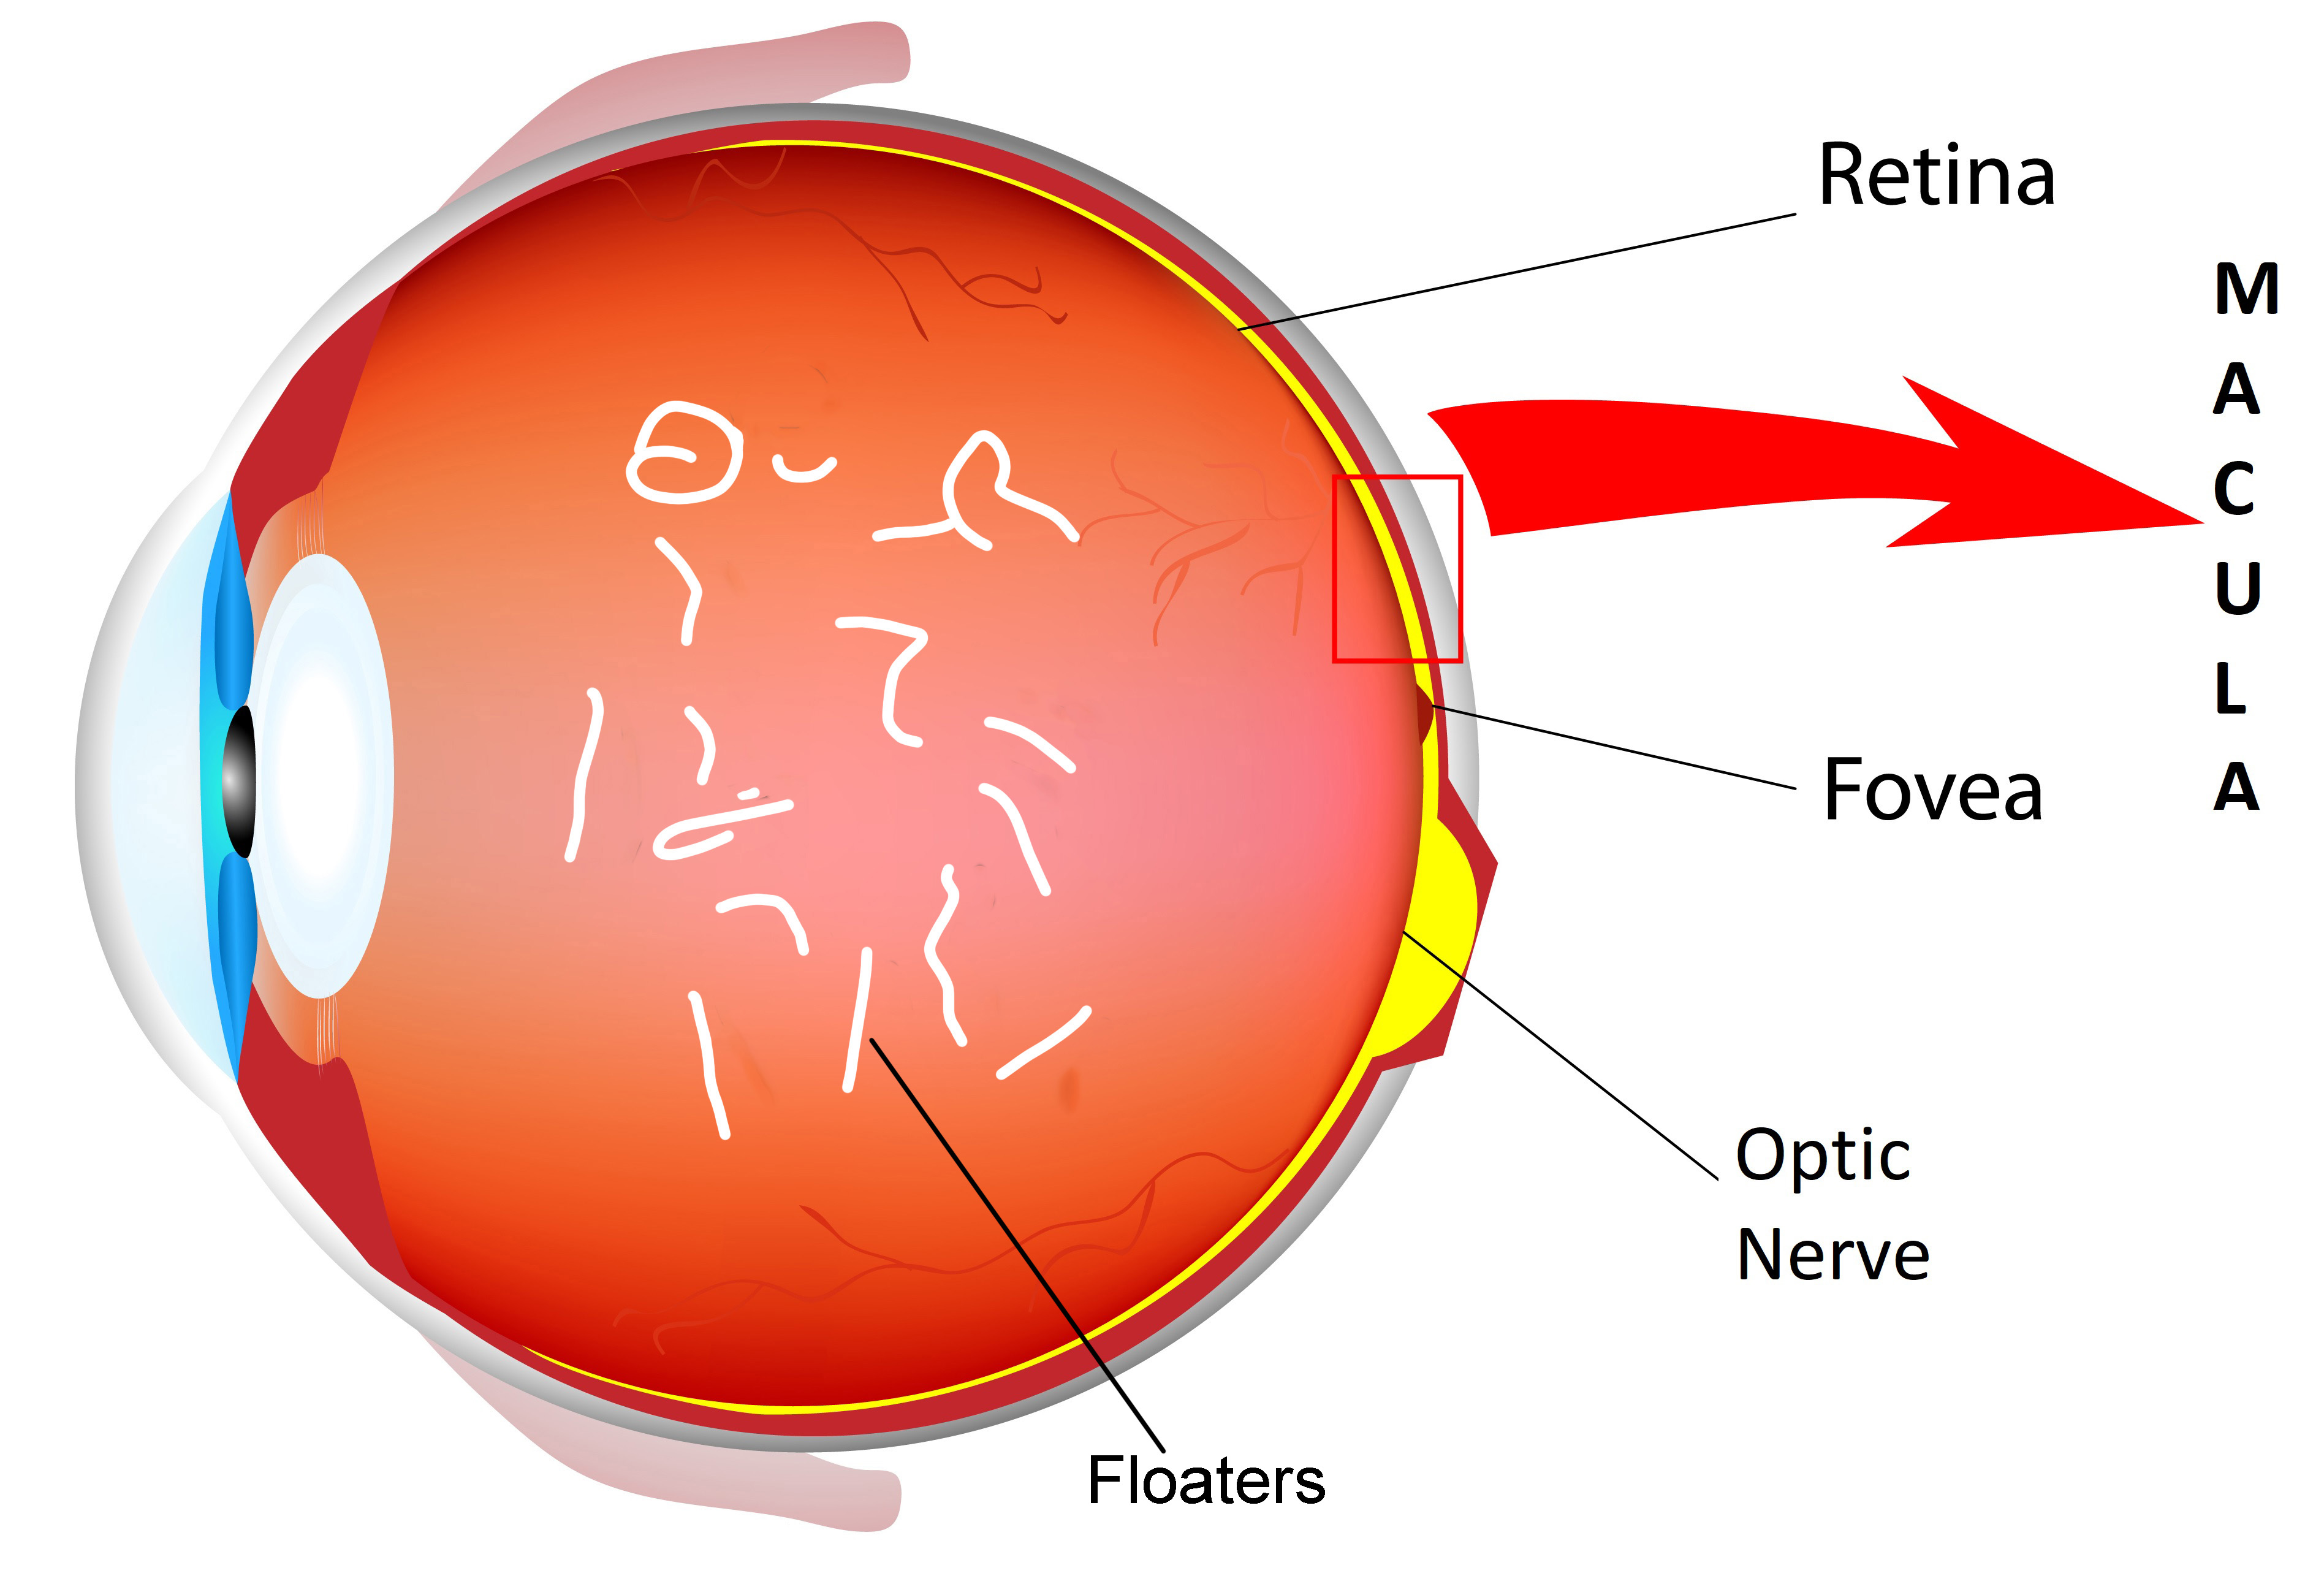 Floaters viswanathan shrewsbury retina surgeon